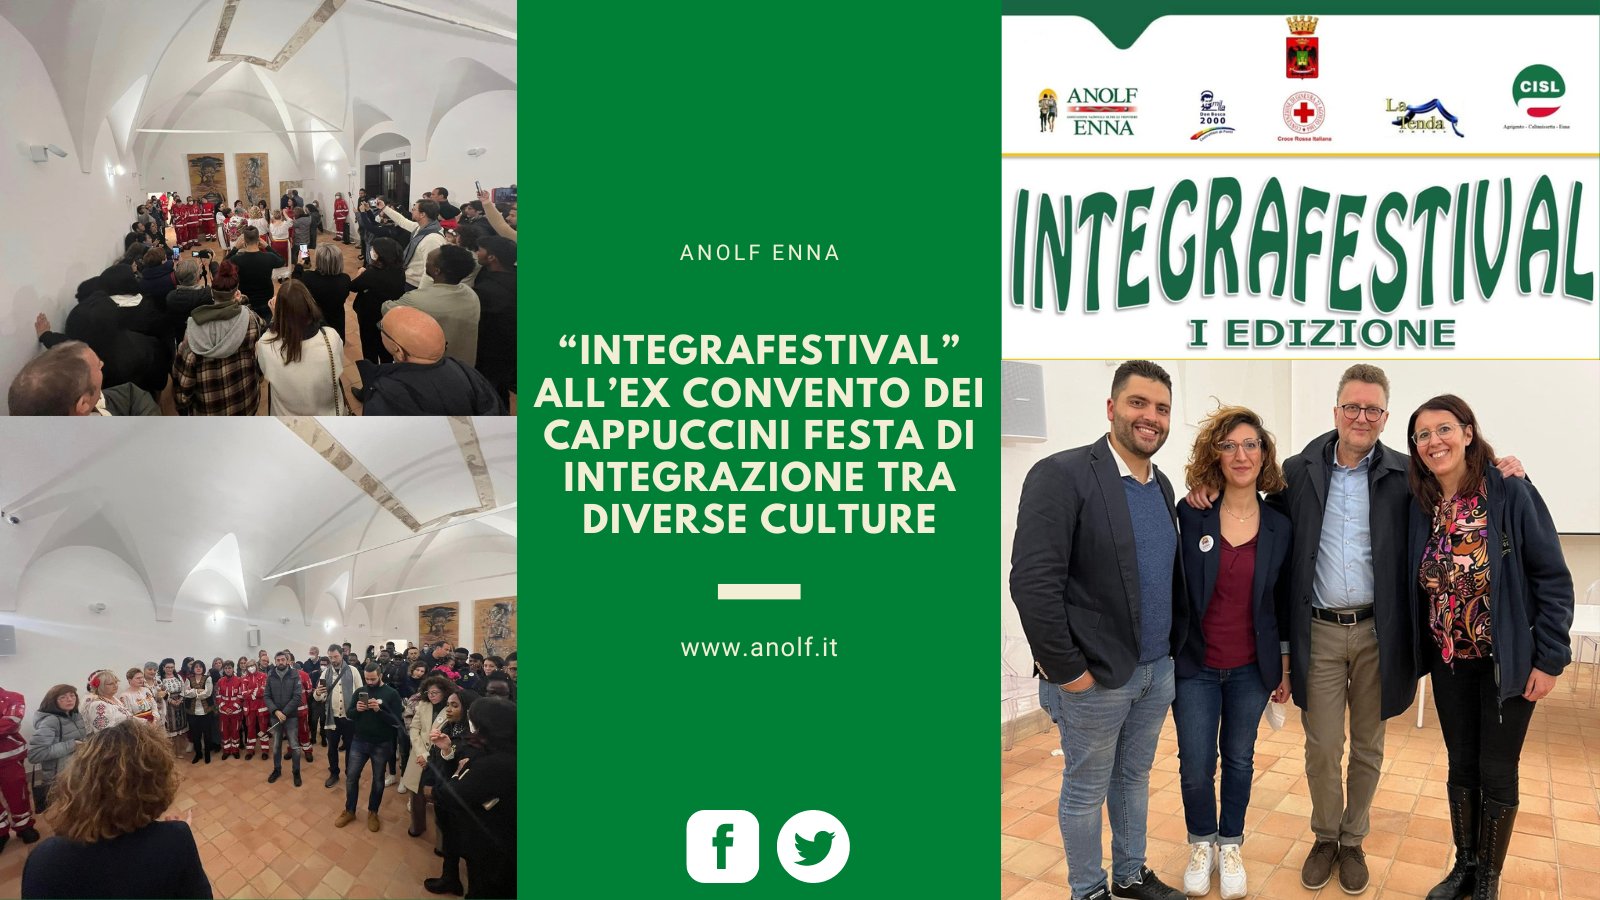 ANOLF Enna: “IntegraFestival” all’ex convento dei cappuccini festa di integrazione tra diverse culture